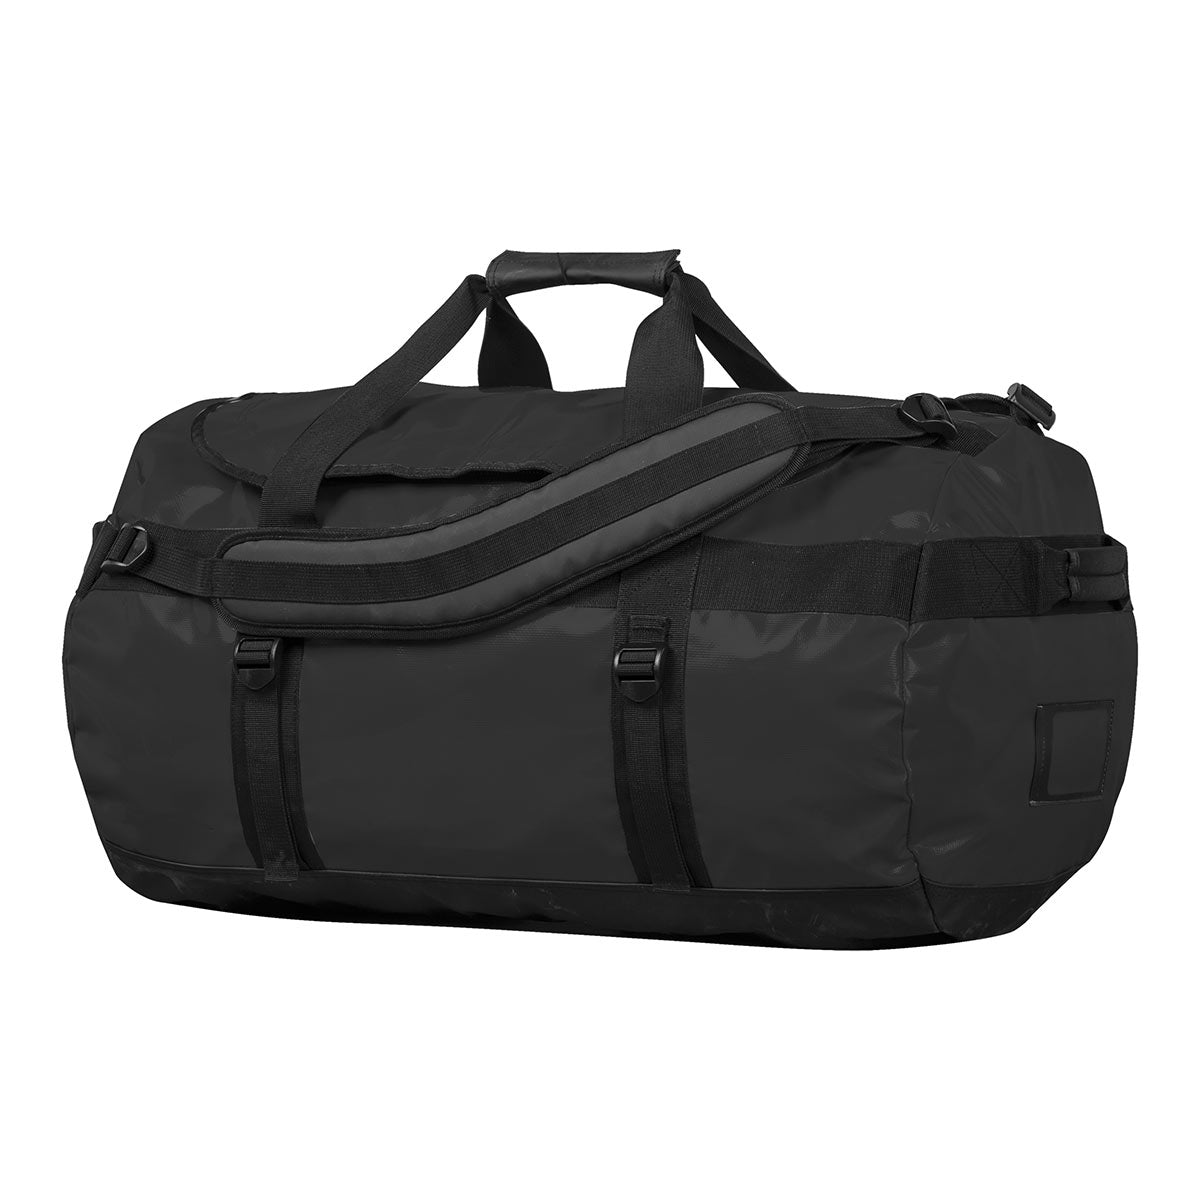 Gear bags - Buy Gear bags & backpacks online